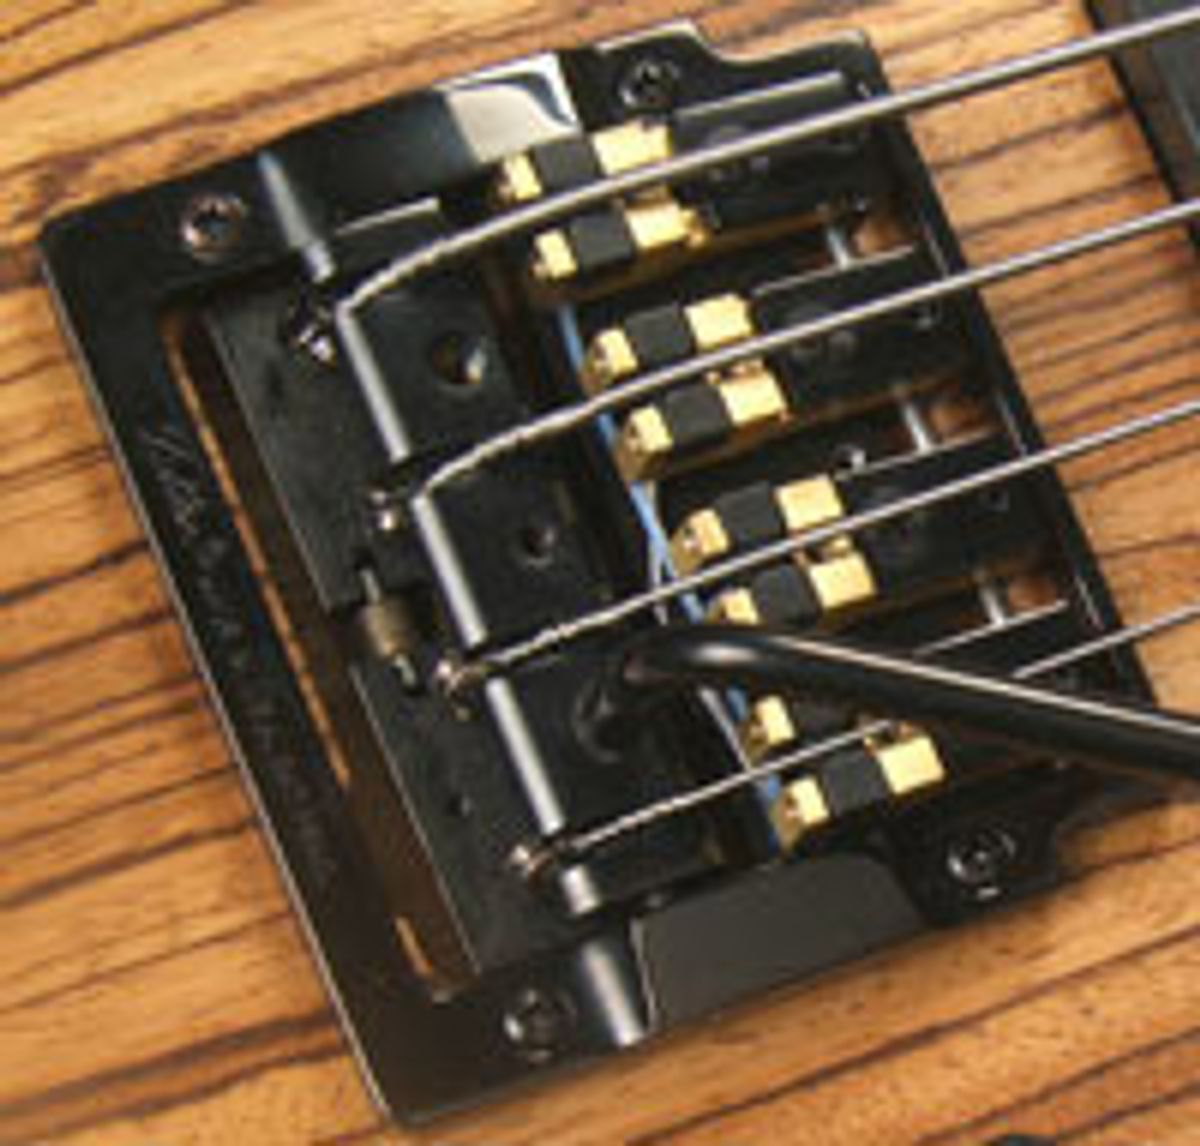 Brown's Guitar Factory Announces Acoustic MIDI Saddle Conversions for Bass Tremolo Bridges